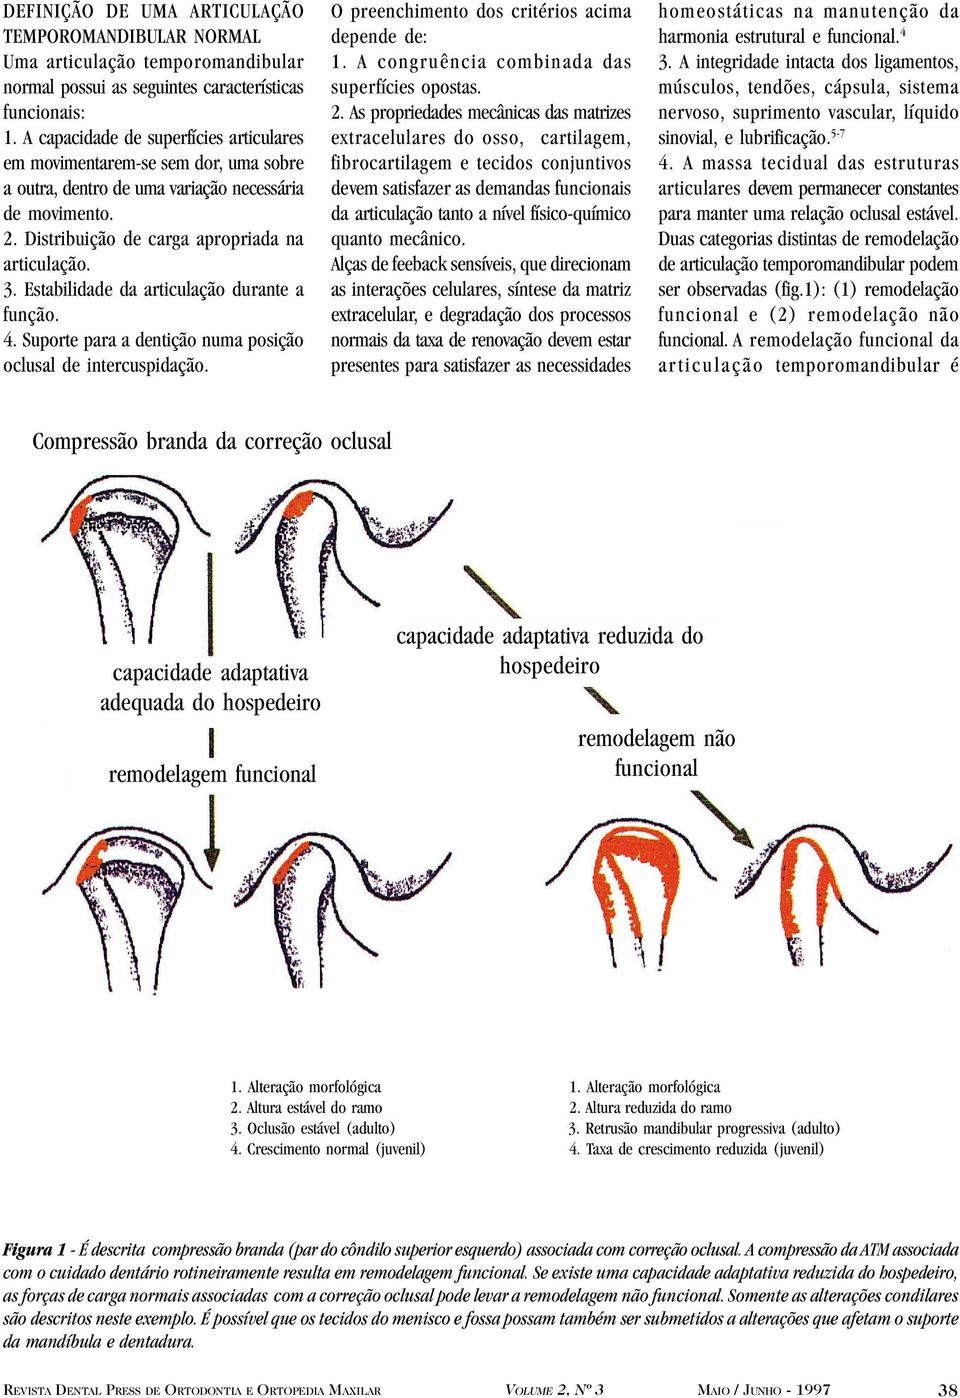 Estabilidade da articulação durante a função. 4. Suporte para a dentição numa posição oclusal de intercuspidação. O preenchimento dos critérios acima depende de: 1.